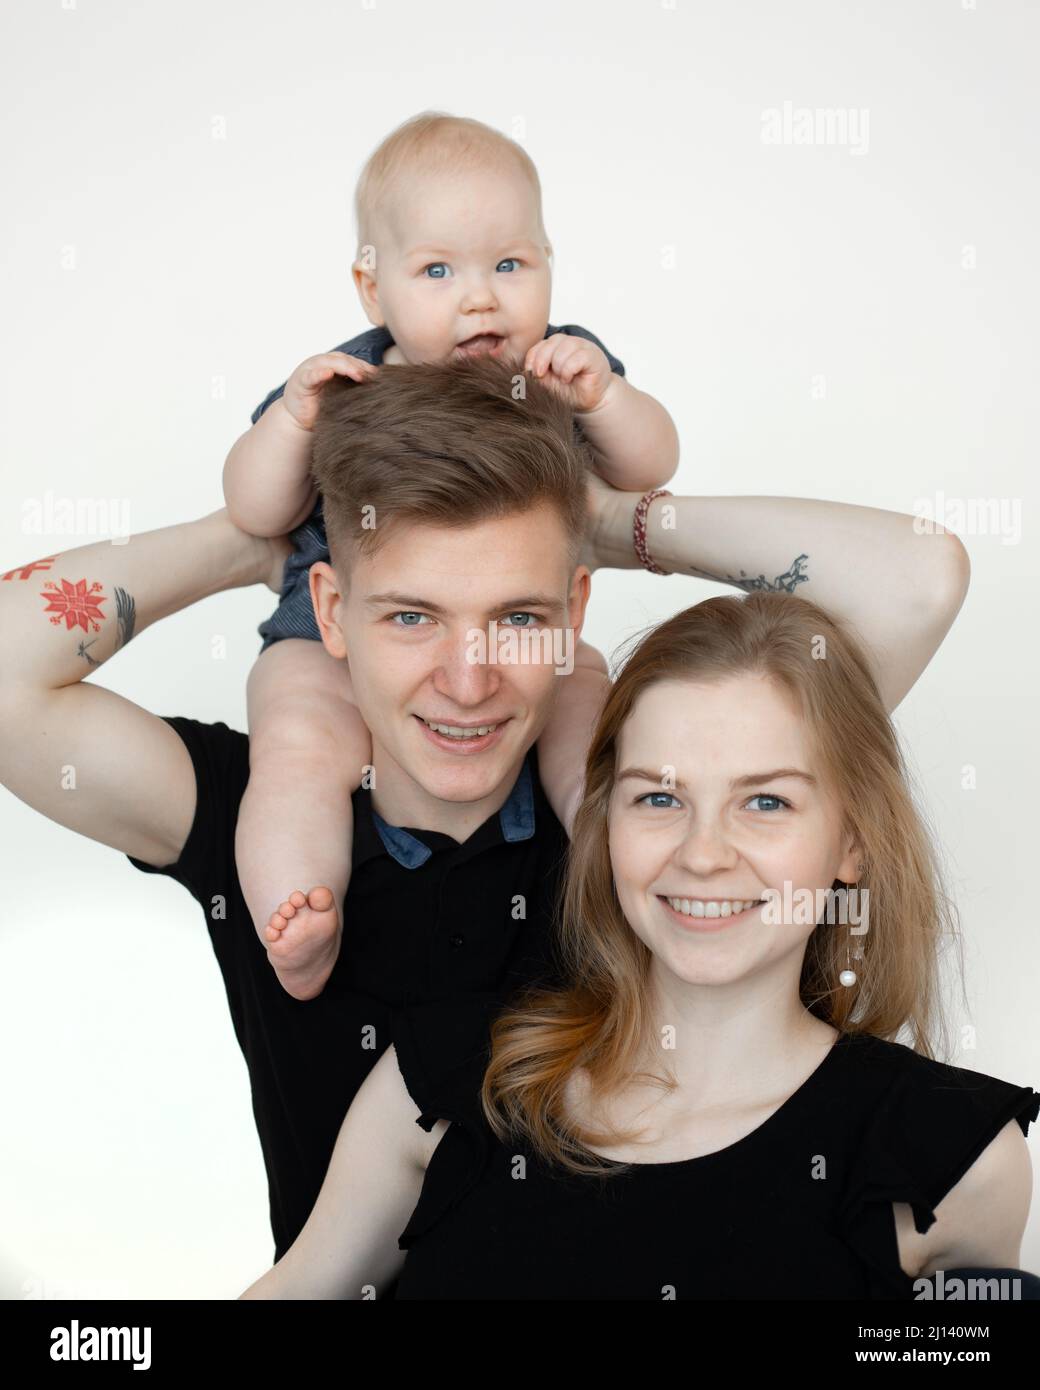 Vertikal lächelnde Familie, die in weißem Studio zusammensteht, Frau, Mann, Baby in schwarzer Kleidung. Kind auf den Schultern halten Stockfoto